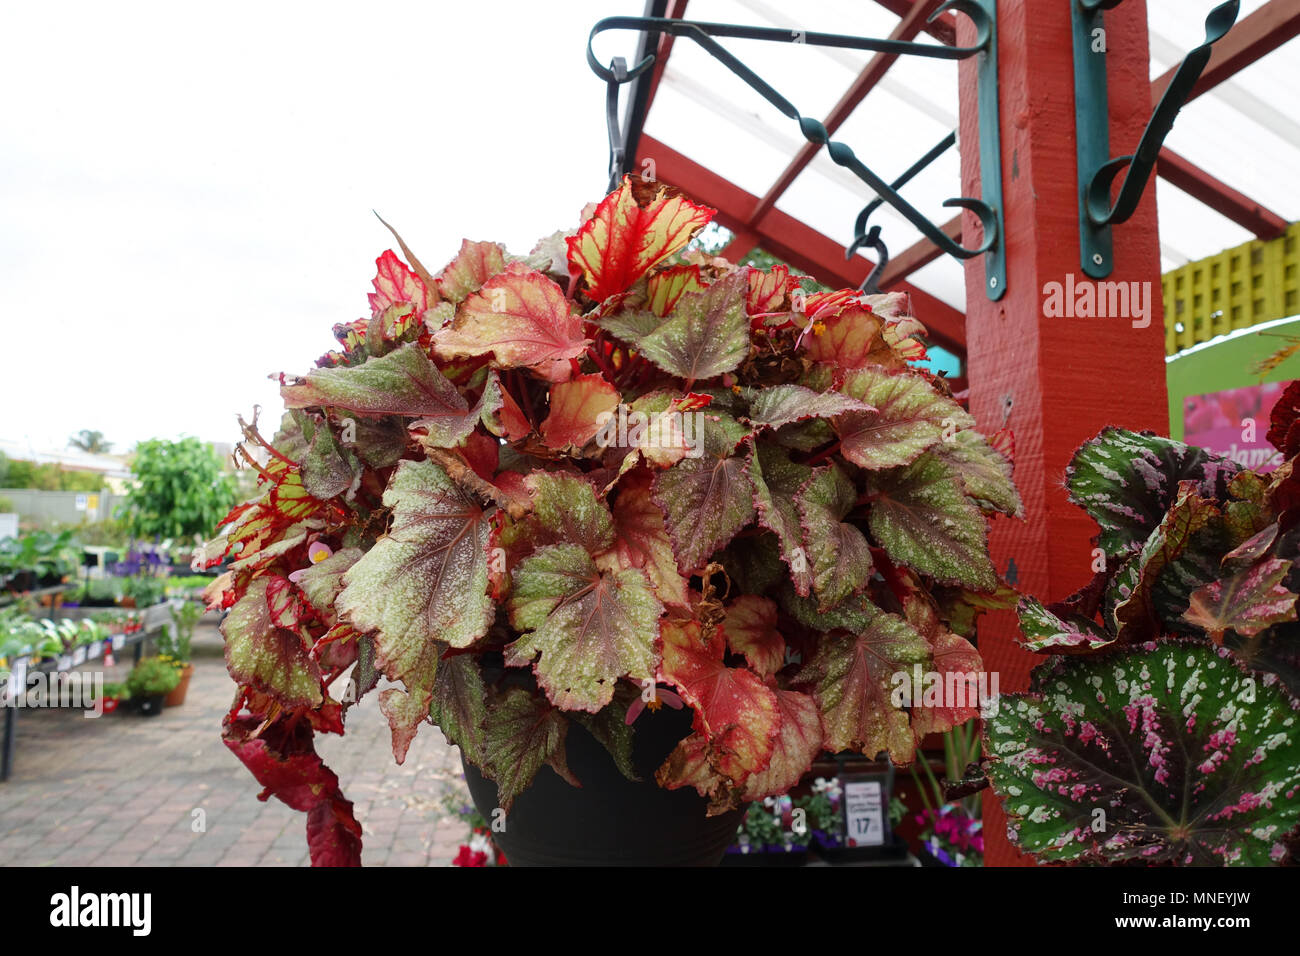 Begonia Rex growing in hanging basket Stock Photo